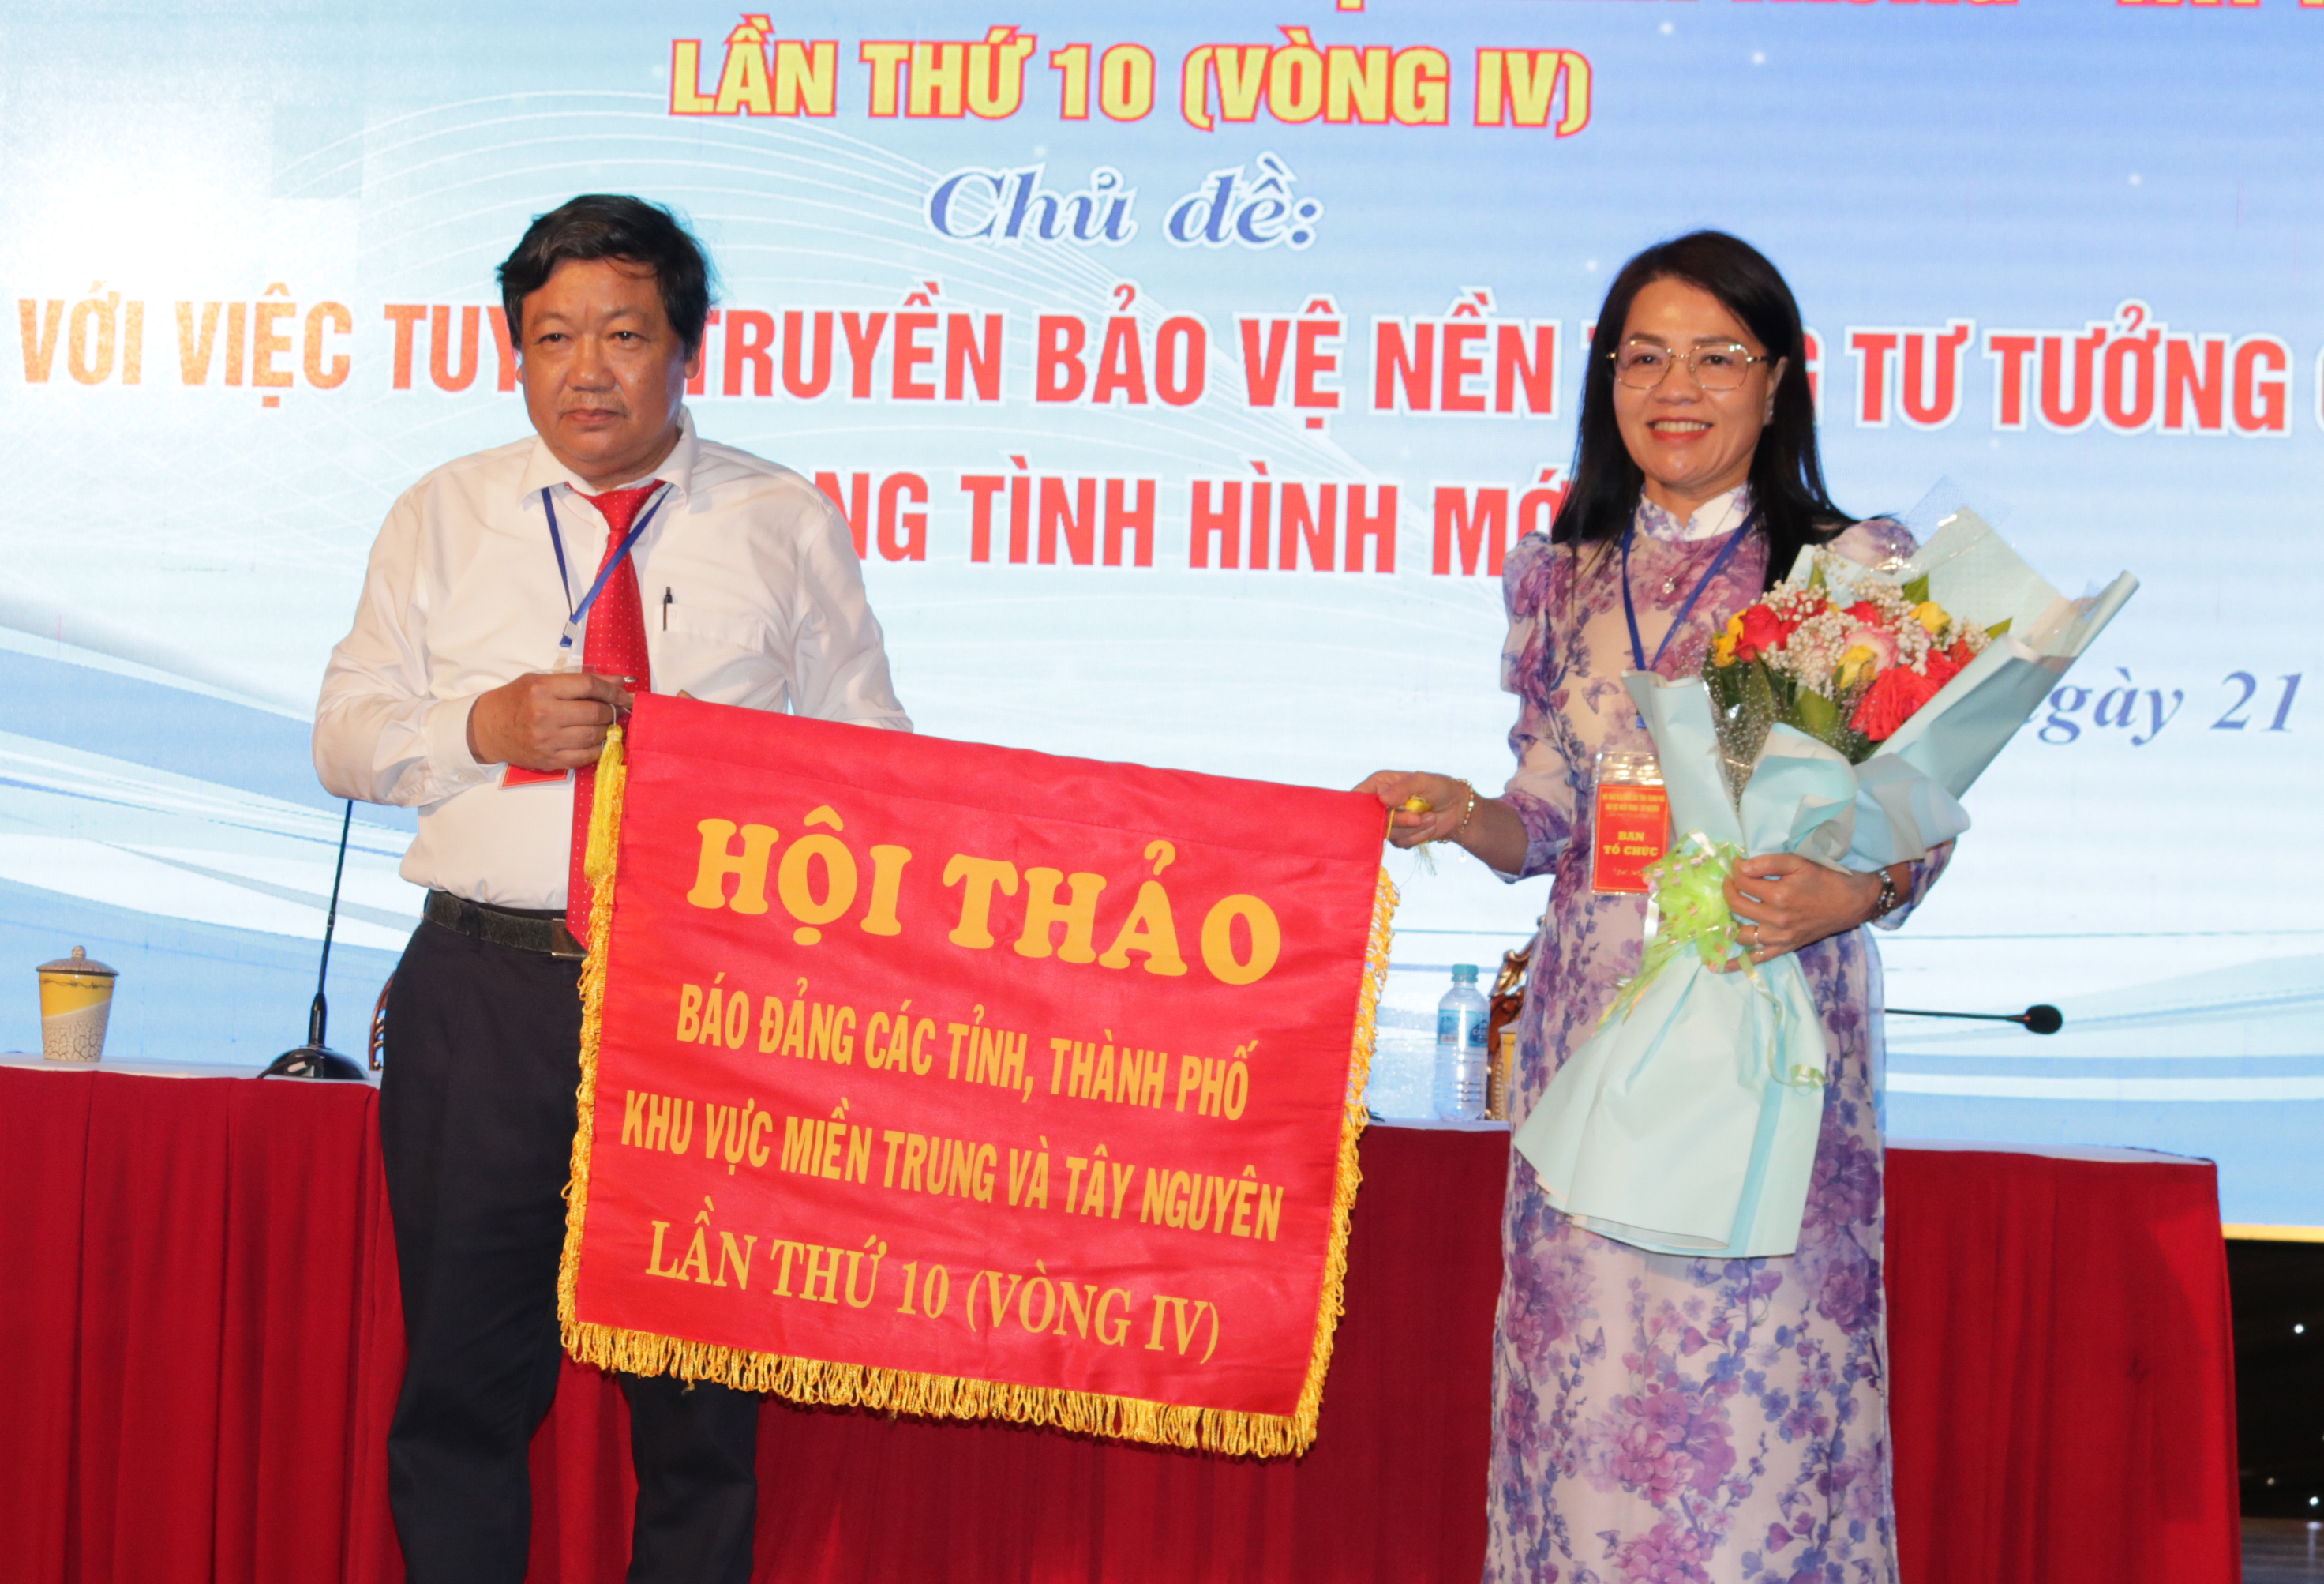 Trao cờ đăng cai hội thảo báo Đảng các tỉnh, thành phố khu vực miền Trung-Tây Nguyên lần thứ 11 (vòng IV) cho Báo Lâm Đồng.